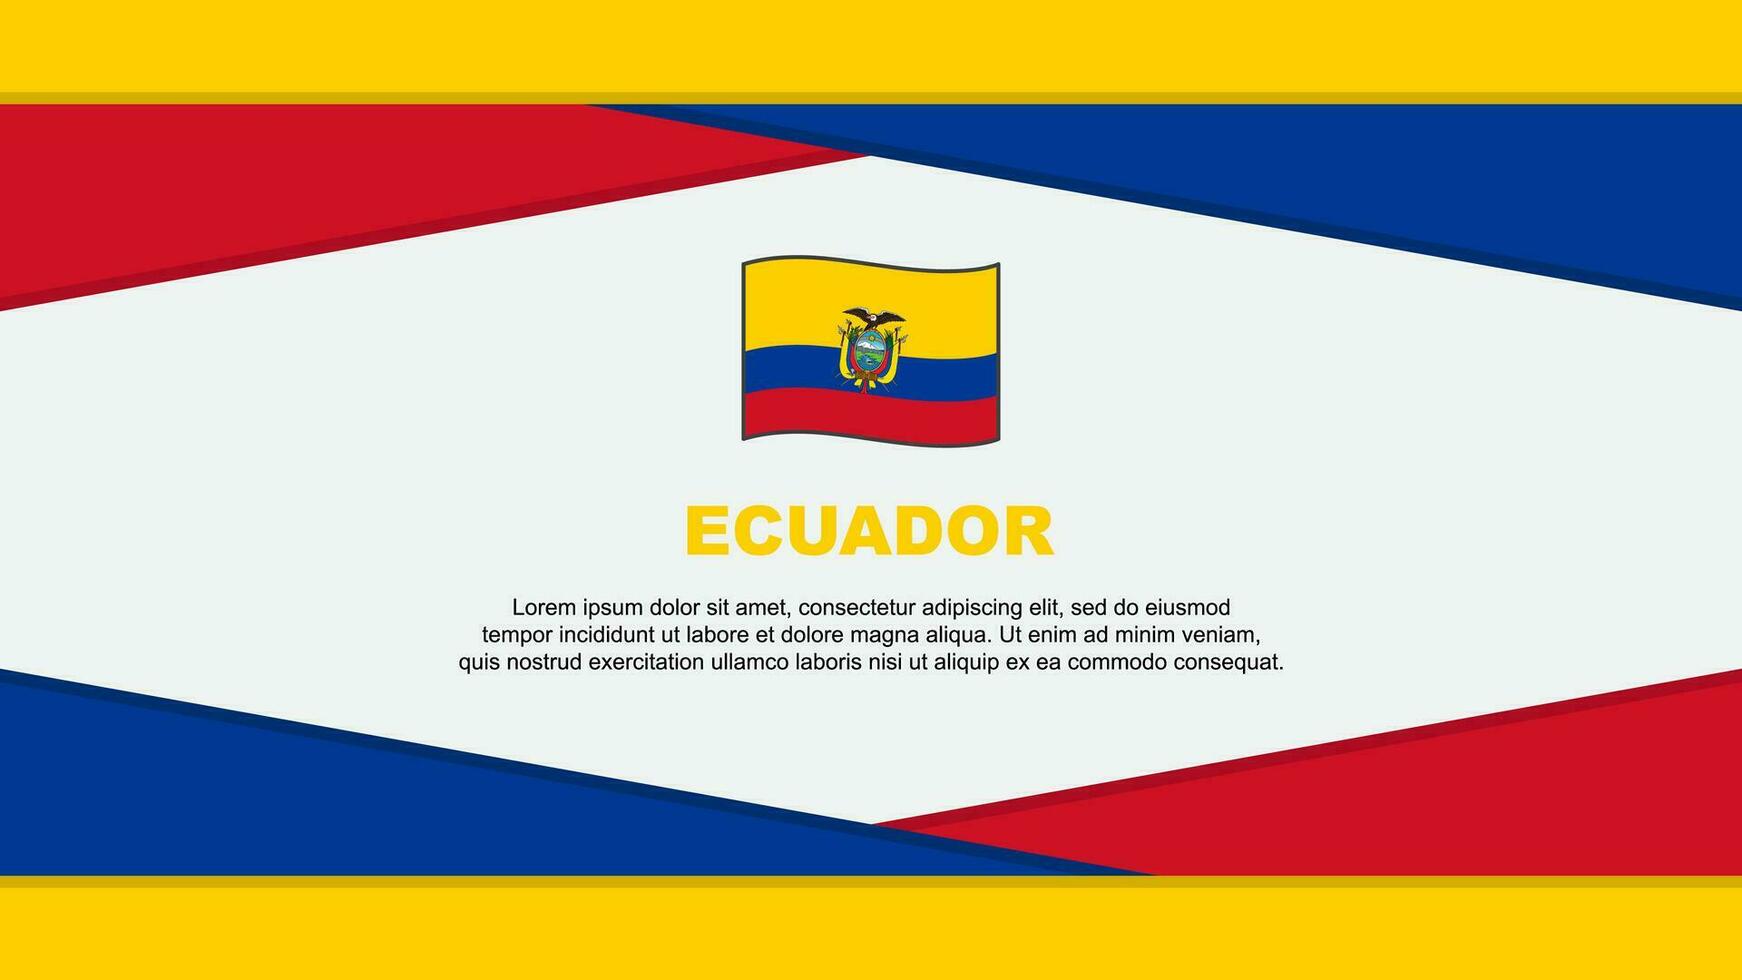 Ecuador Flag Abstract Background Design Template. Ecuador Independence Day Banner Cartoon Vector Illustration. Ecuador Vector